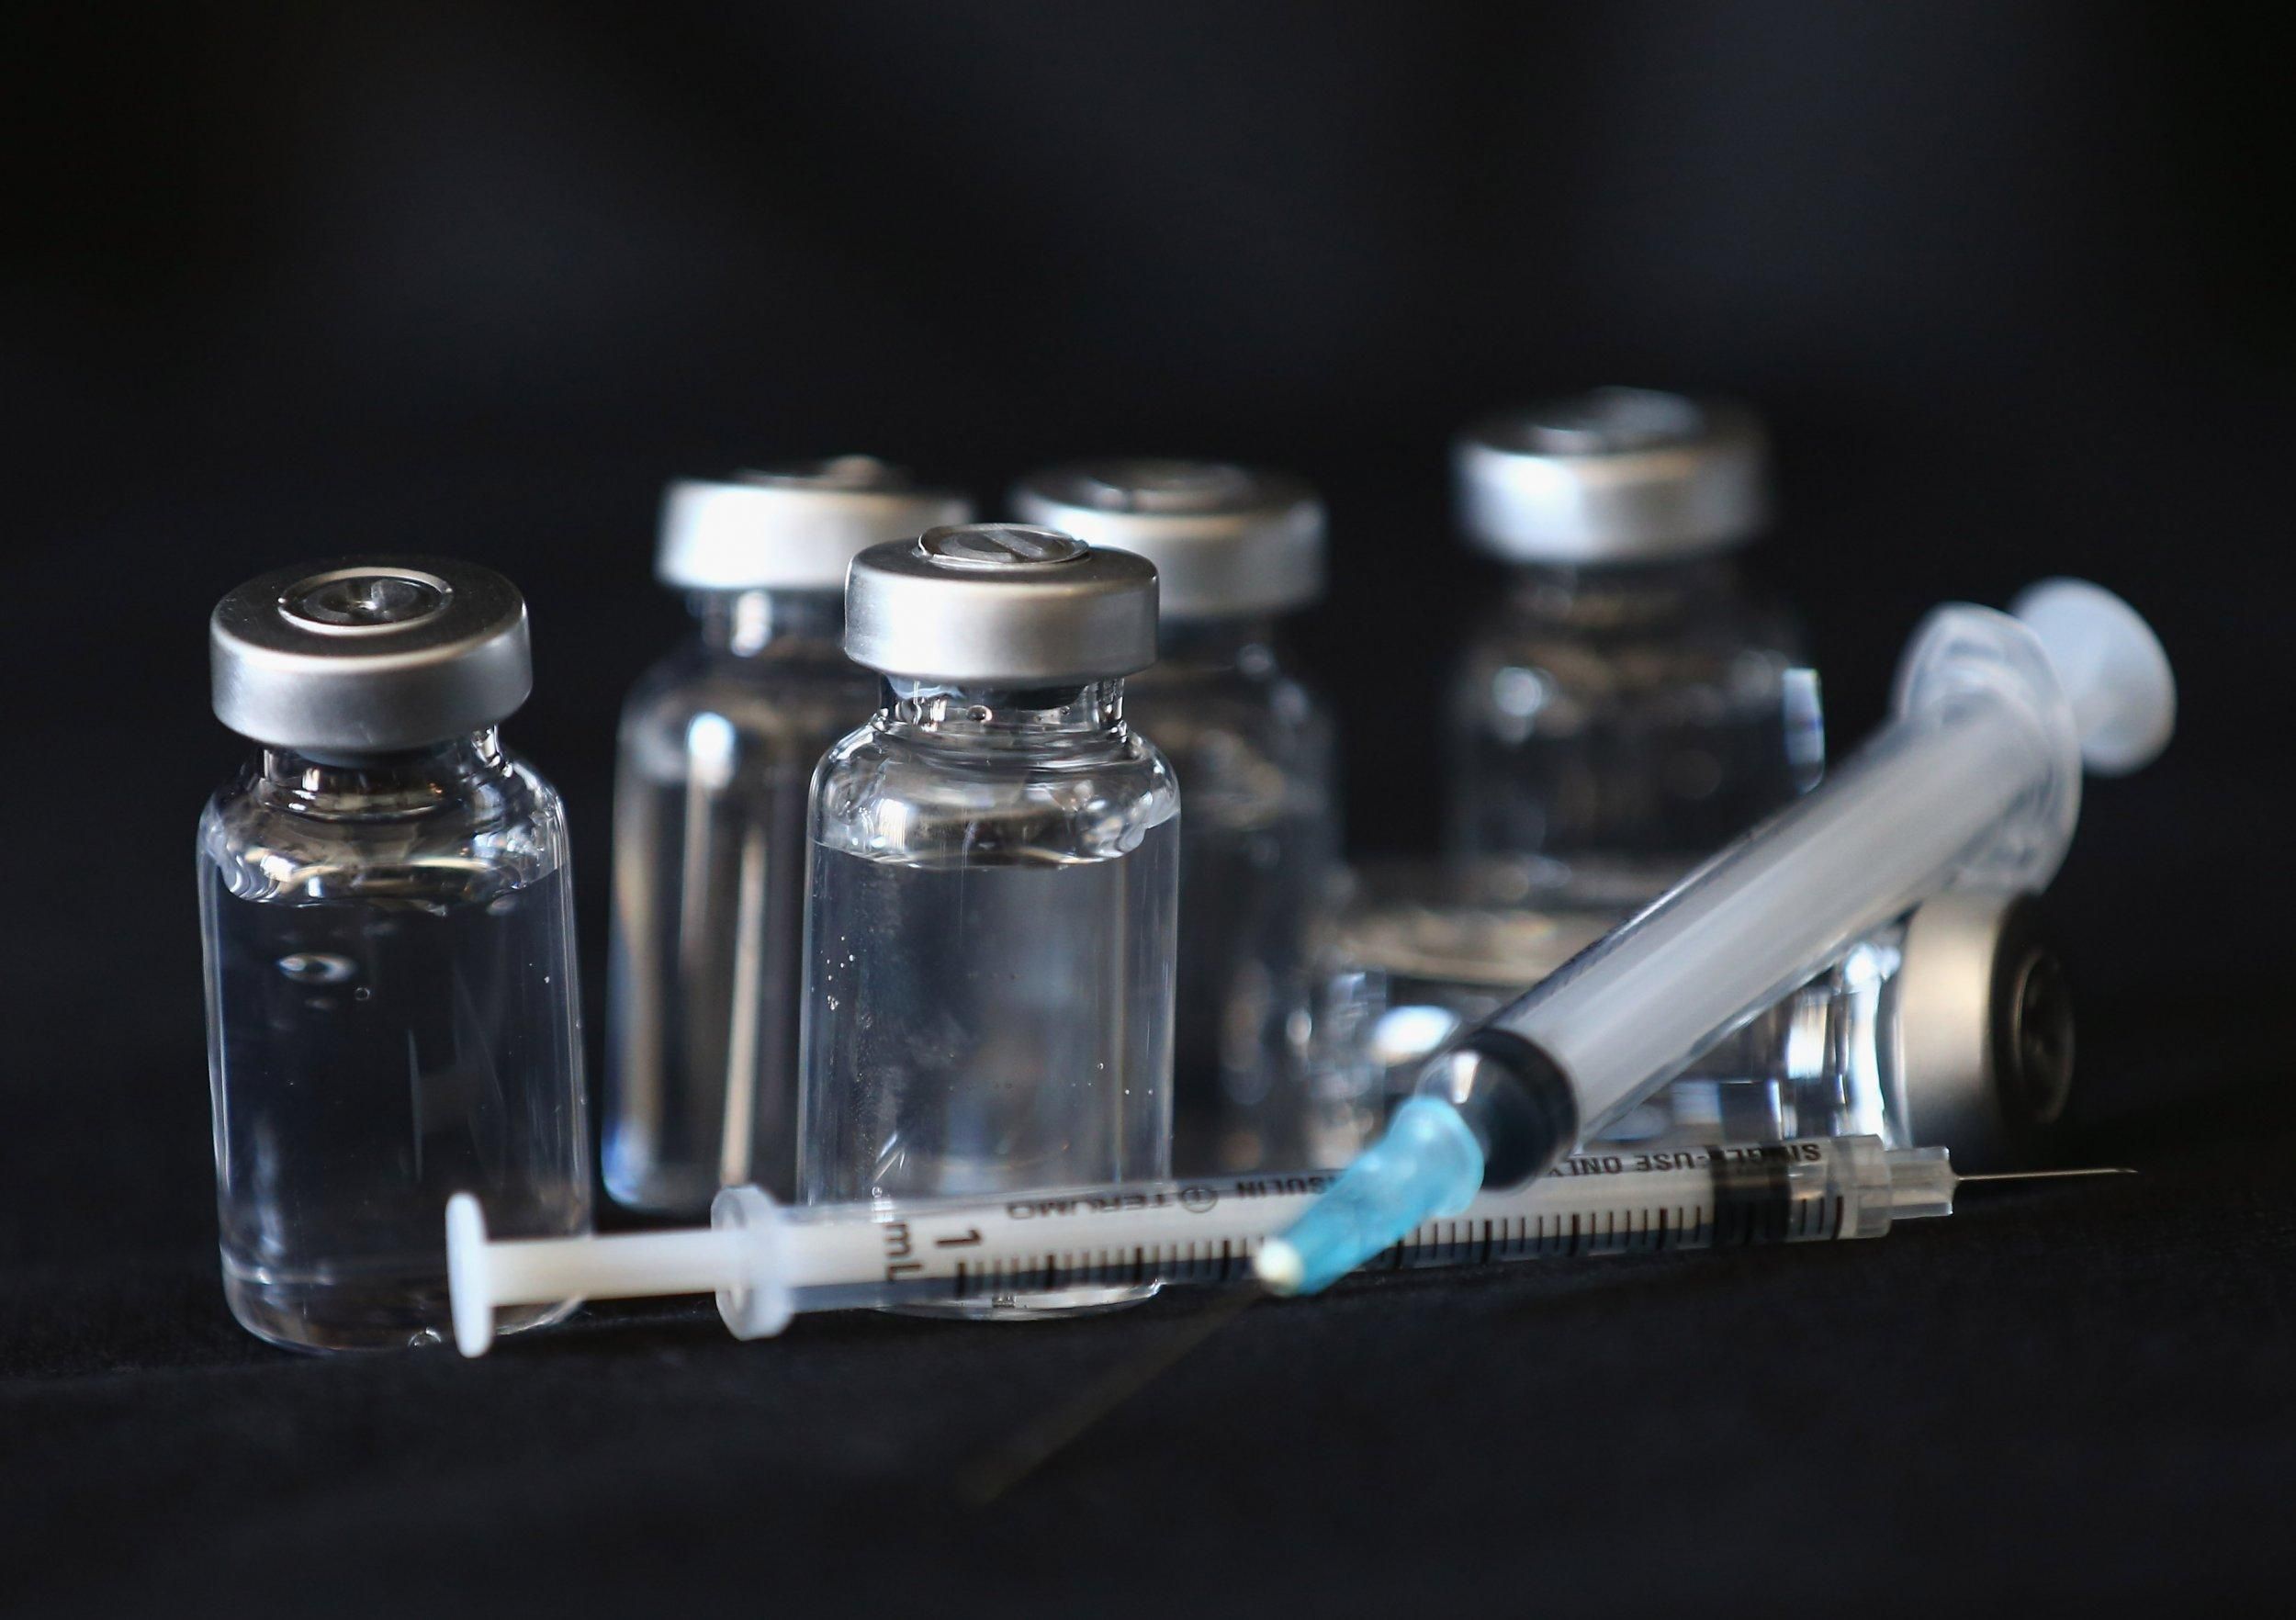 Германия утвердила спецпрограмму по разработке вакцины против COVID-19 стоимостью 750 млн евро